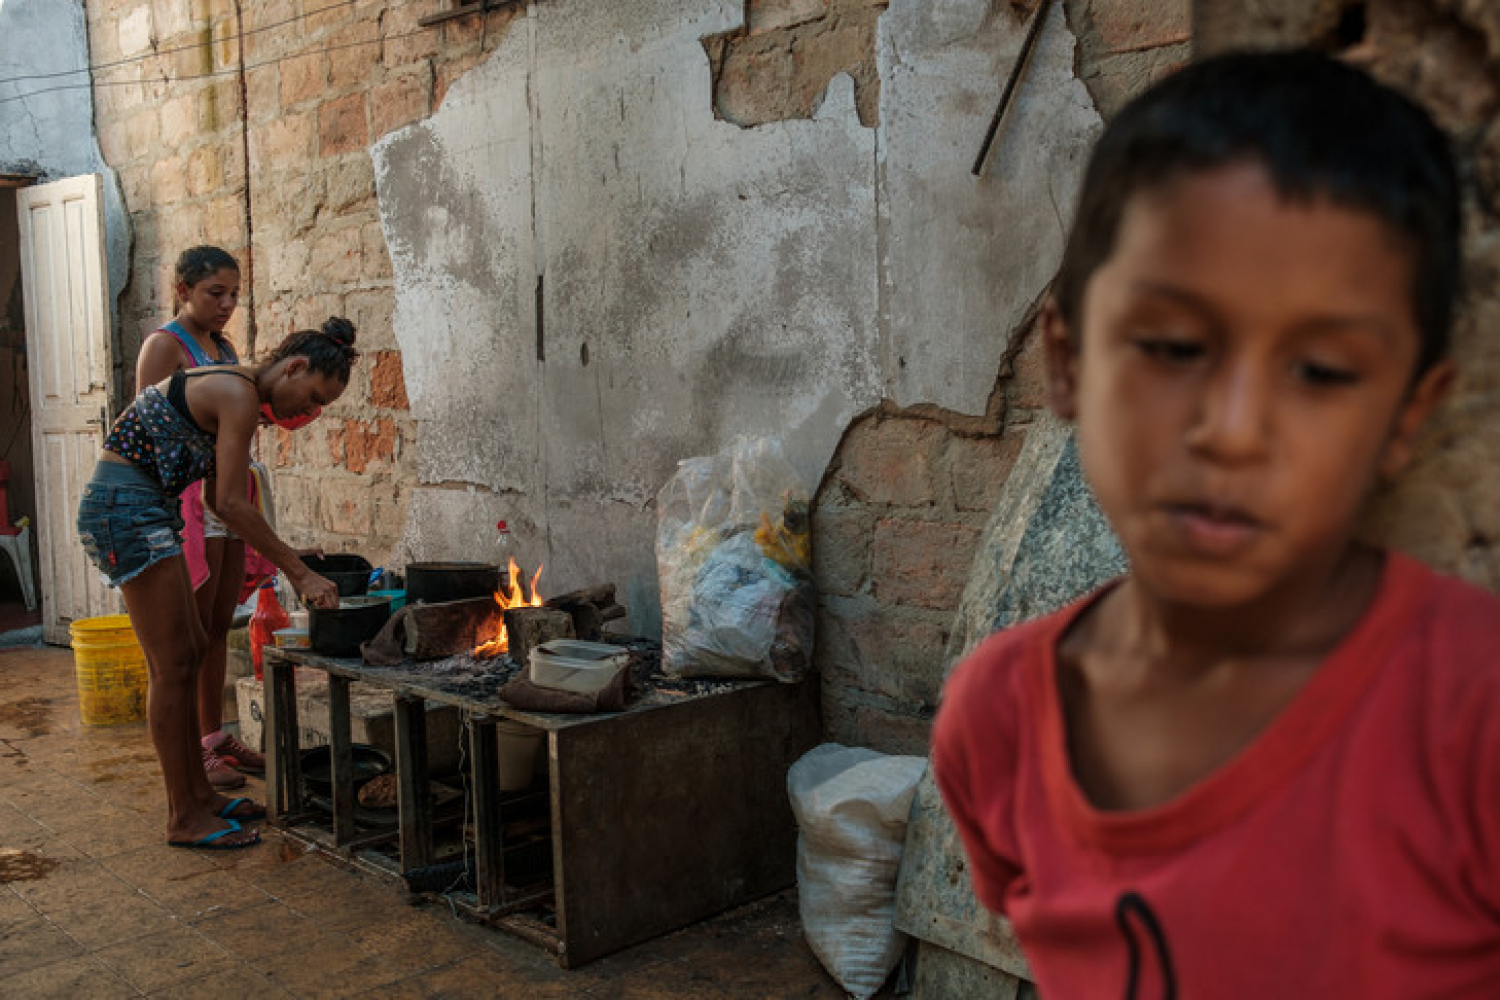 Brazília — A venezuelai menekültek problémái